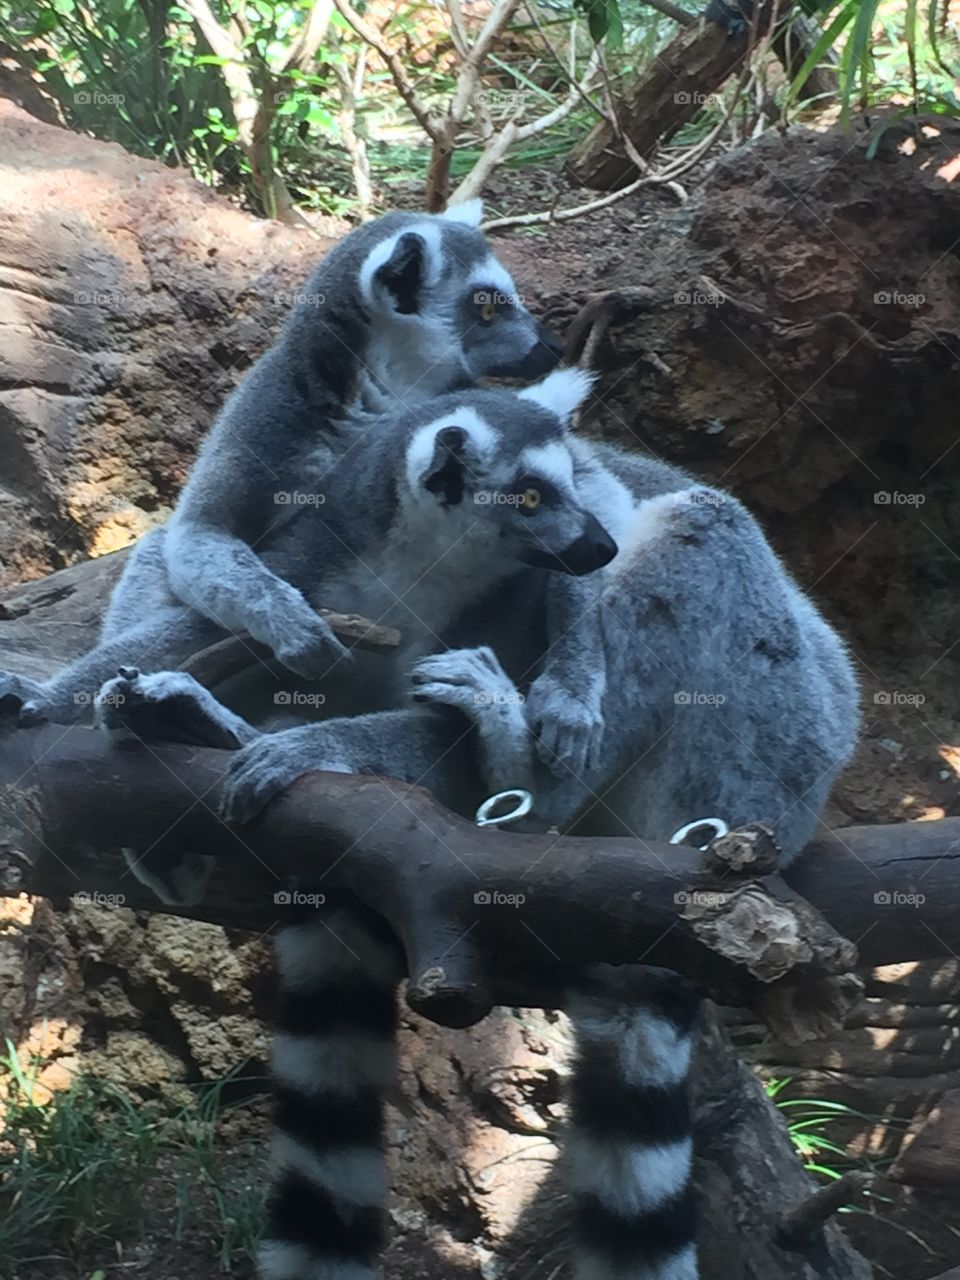 lemurs at the Florida aquarium down town tampa fl 2015